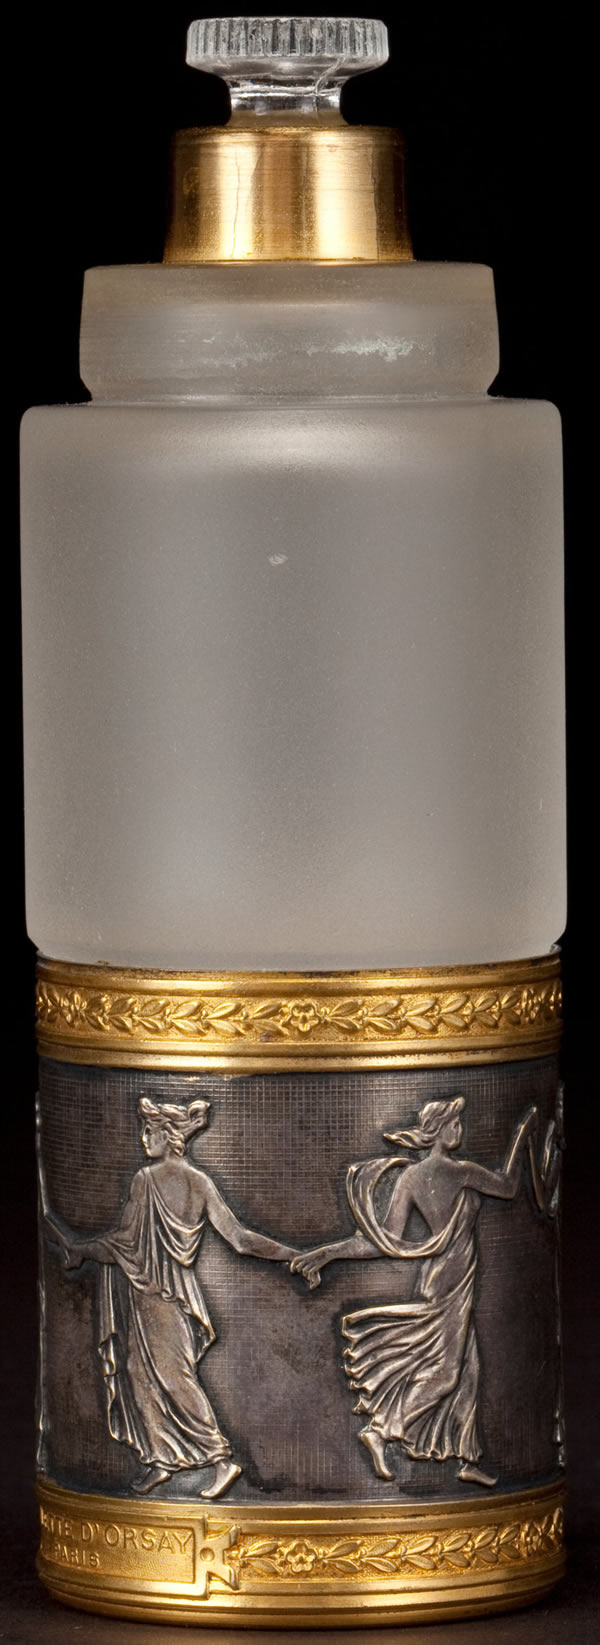 R. Lalique D'Orsay Violette Perfume Bottle